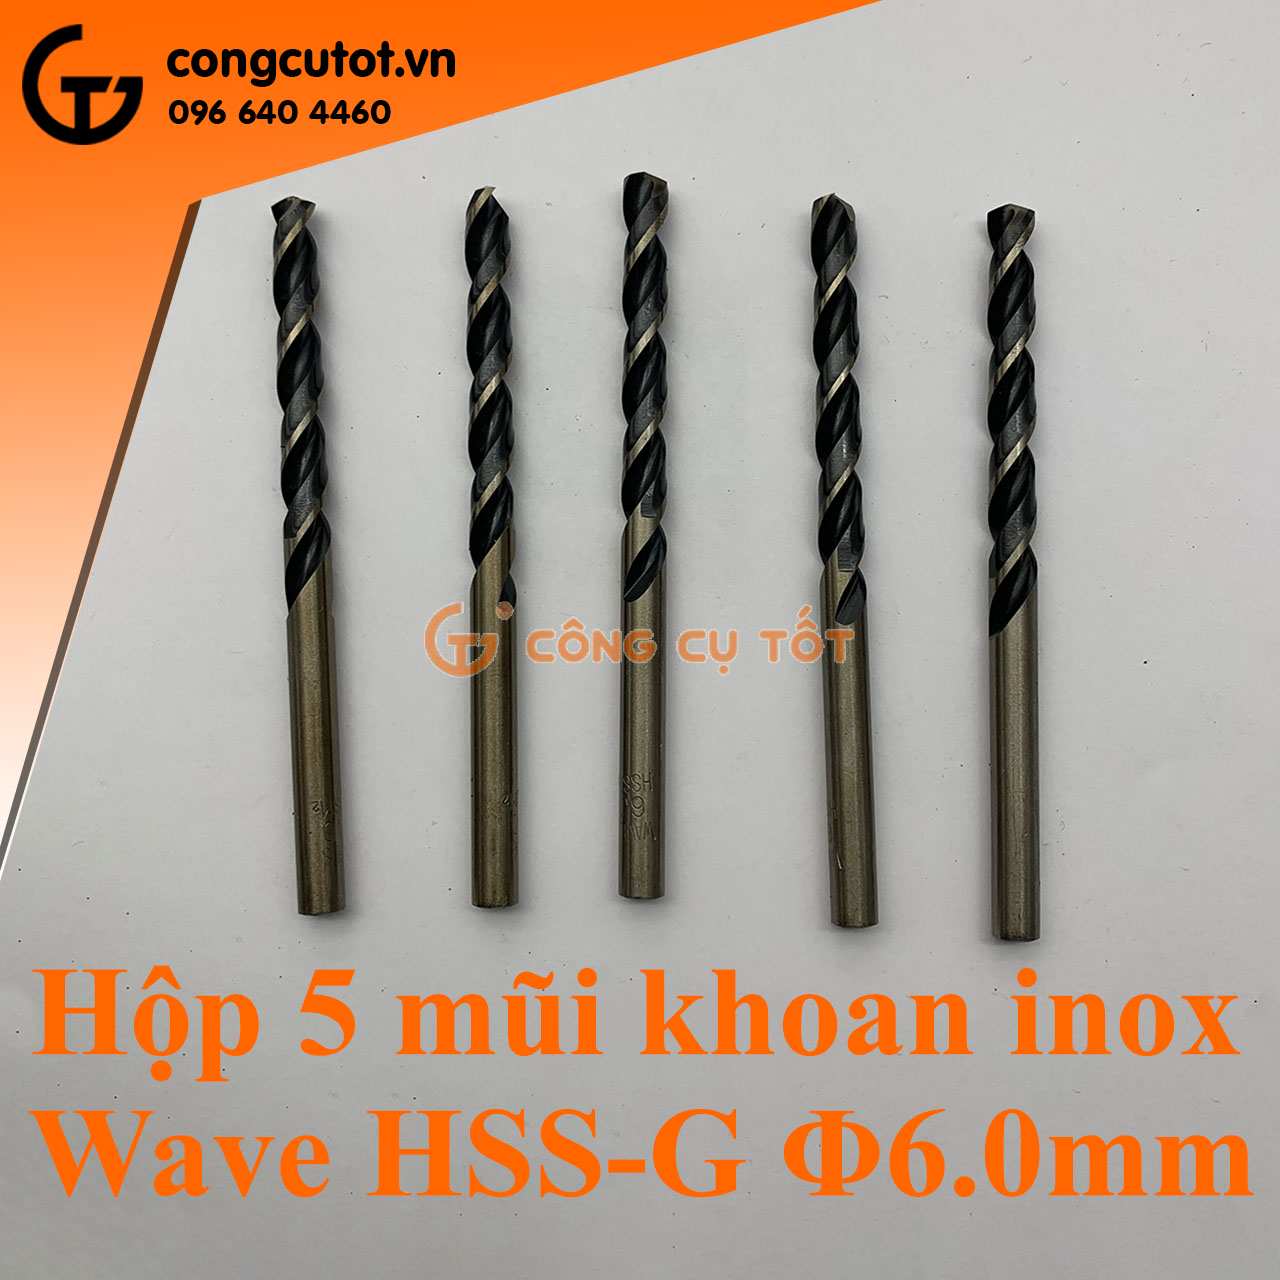 Hộp sản phẩm 5 mũi khoan inox Wave HSS-G Φ6.0mm